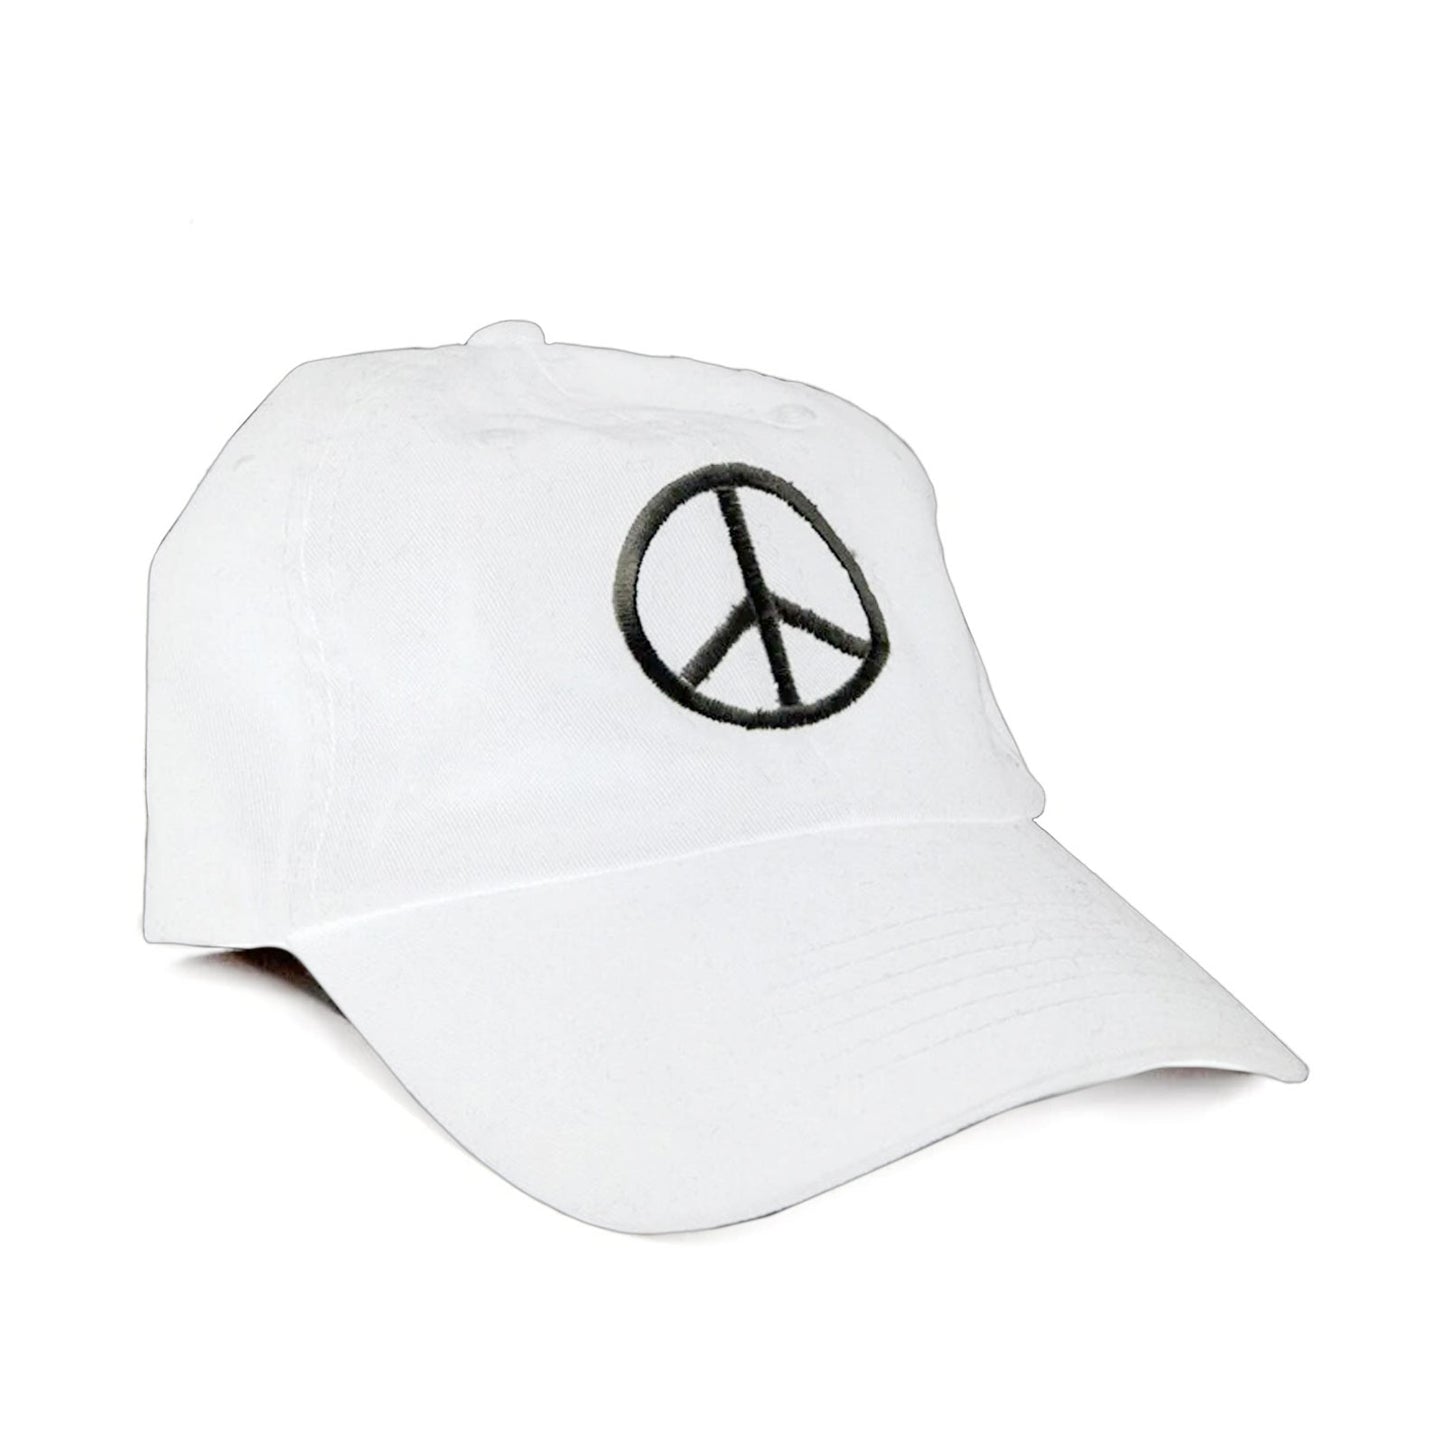 Sylvester & Co. Peace Cap, White